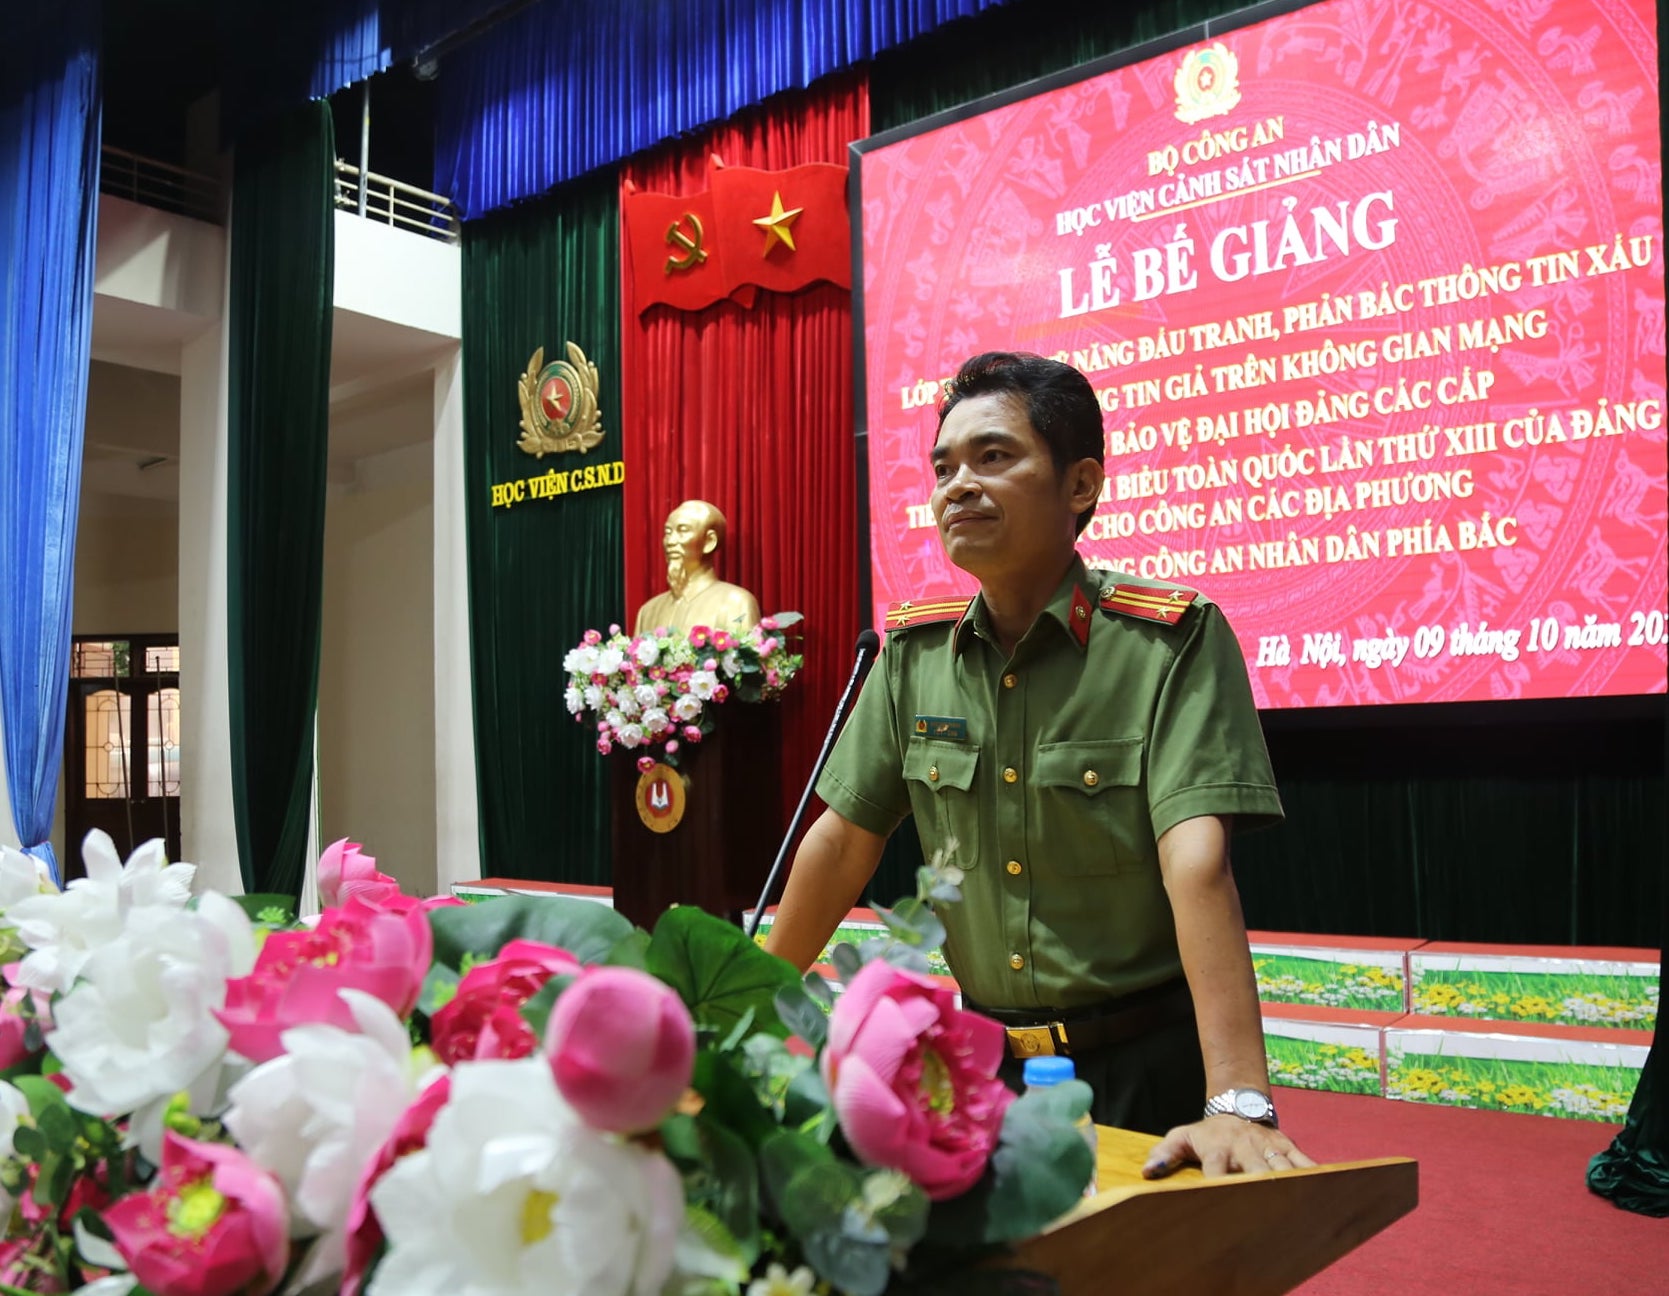 Trung tá Ngô Văn Thăng,Phòng PX03 CATP. Hà Nội, đại diện học viên được khen thưởng phát biểu